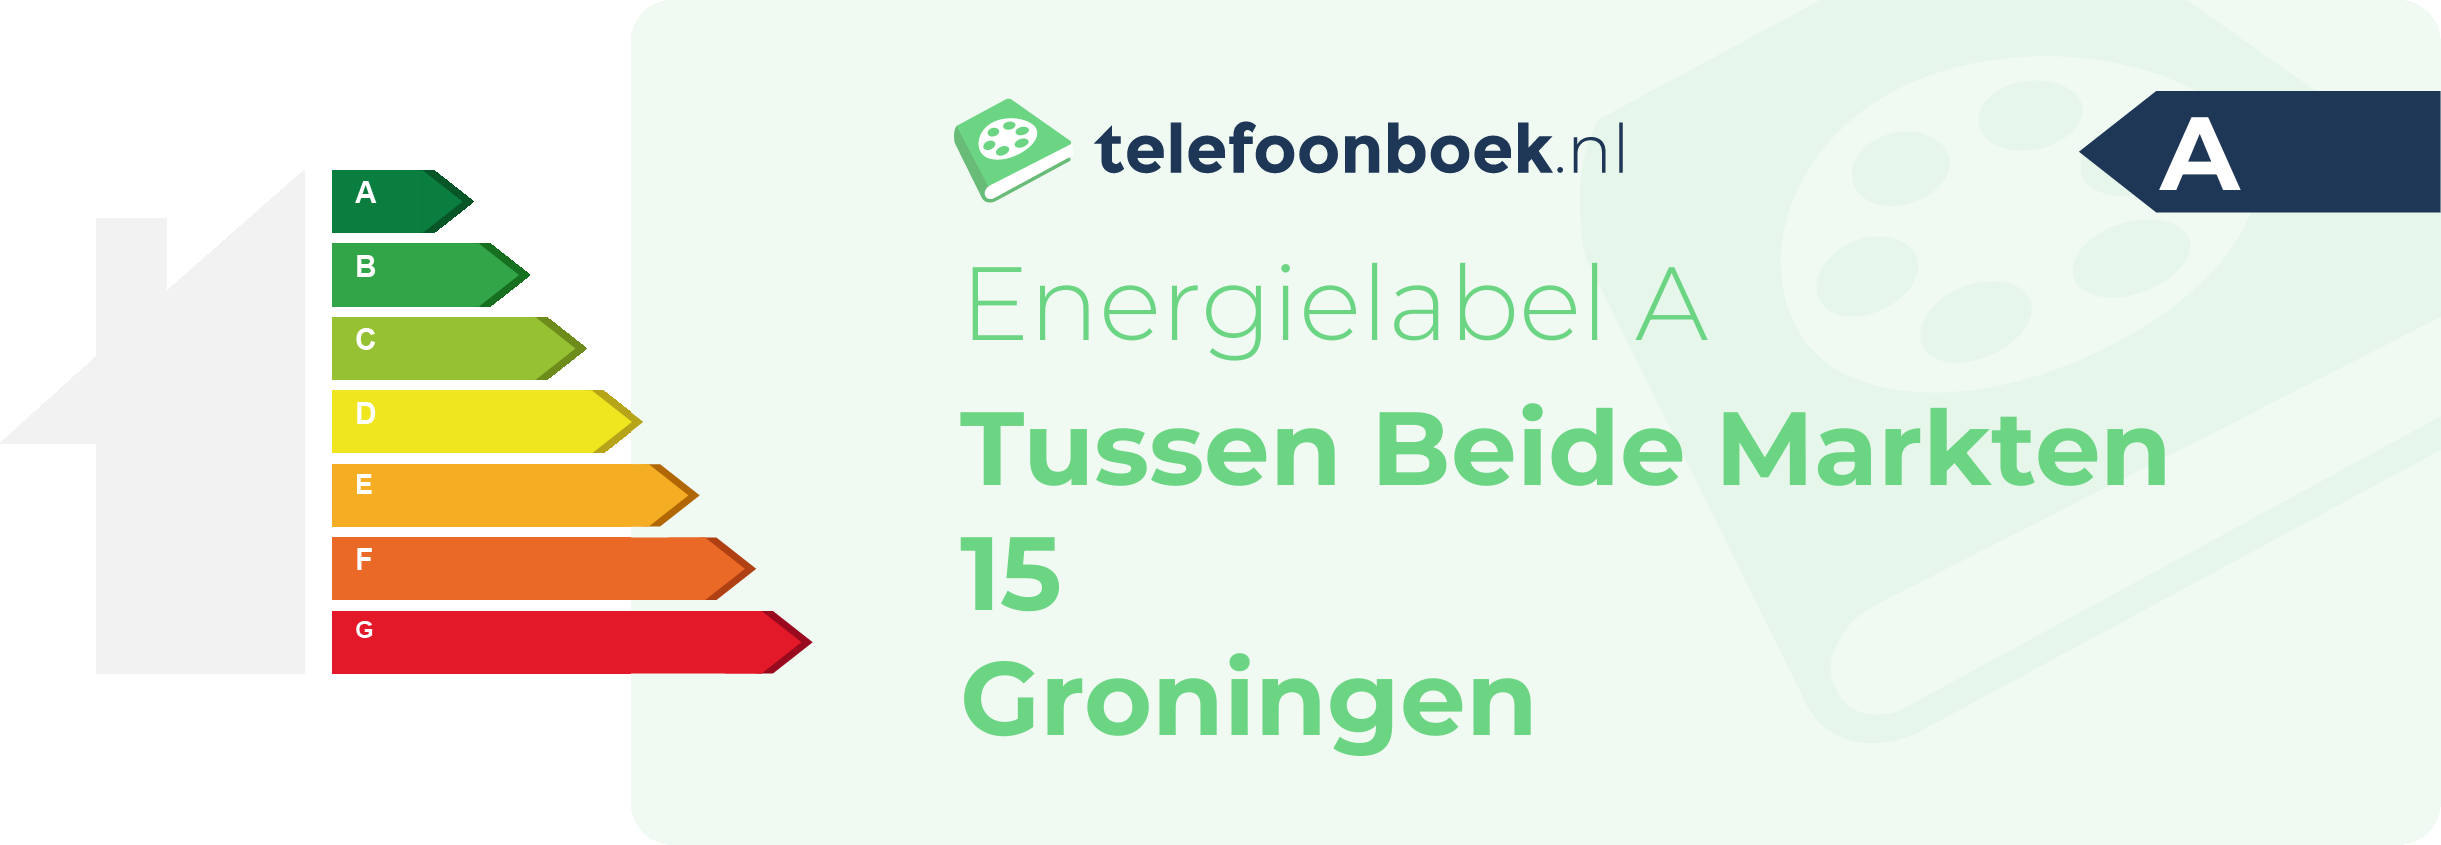 Energielabel Tussen Beide Markten 15 Groningen